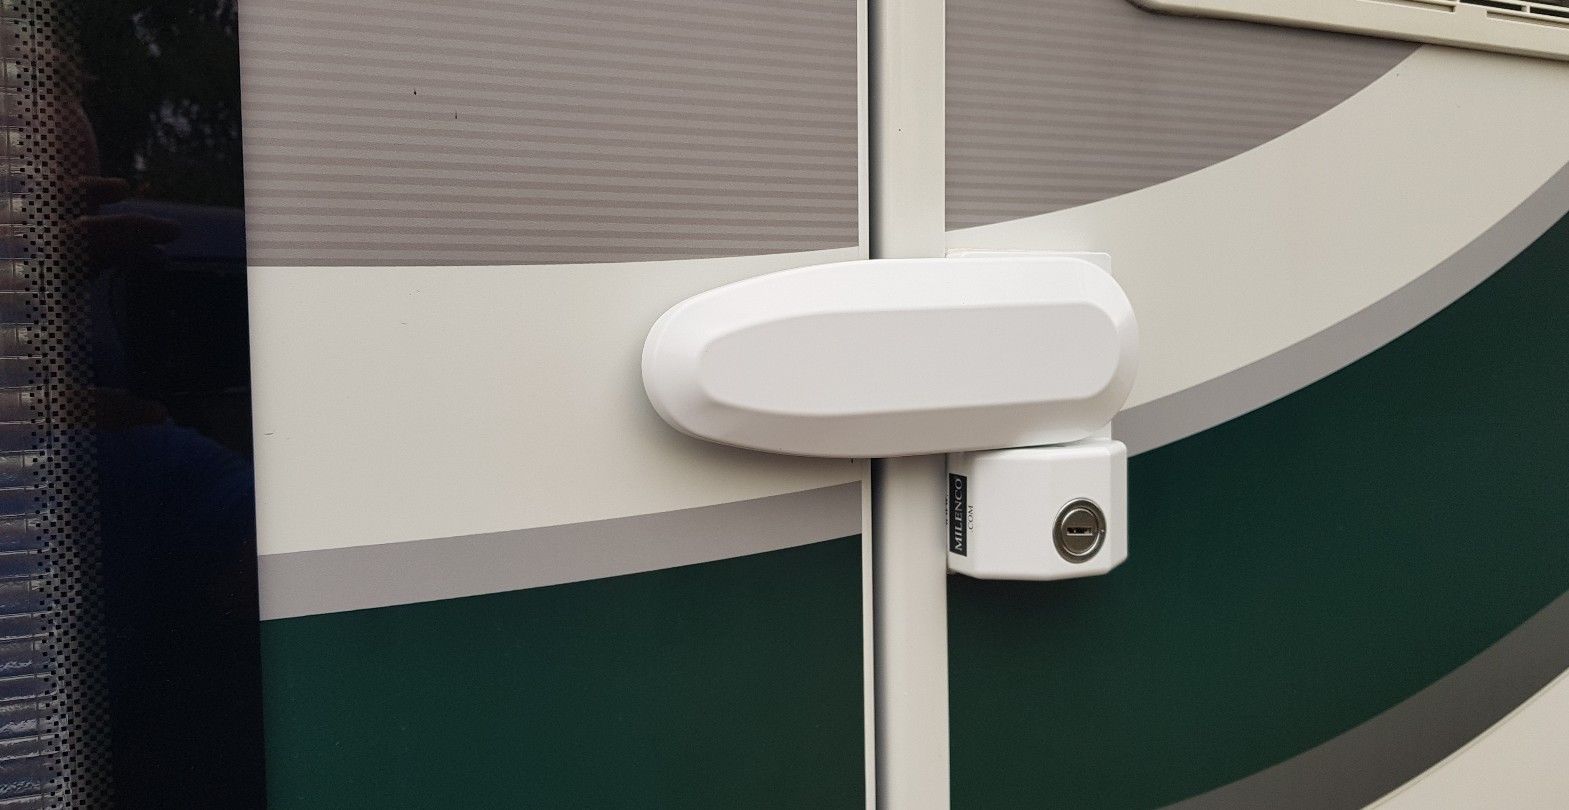 Milenco Security Door Locks For